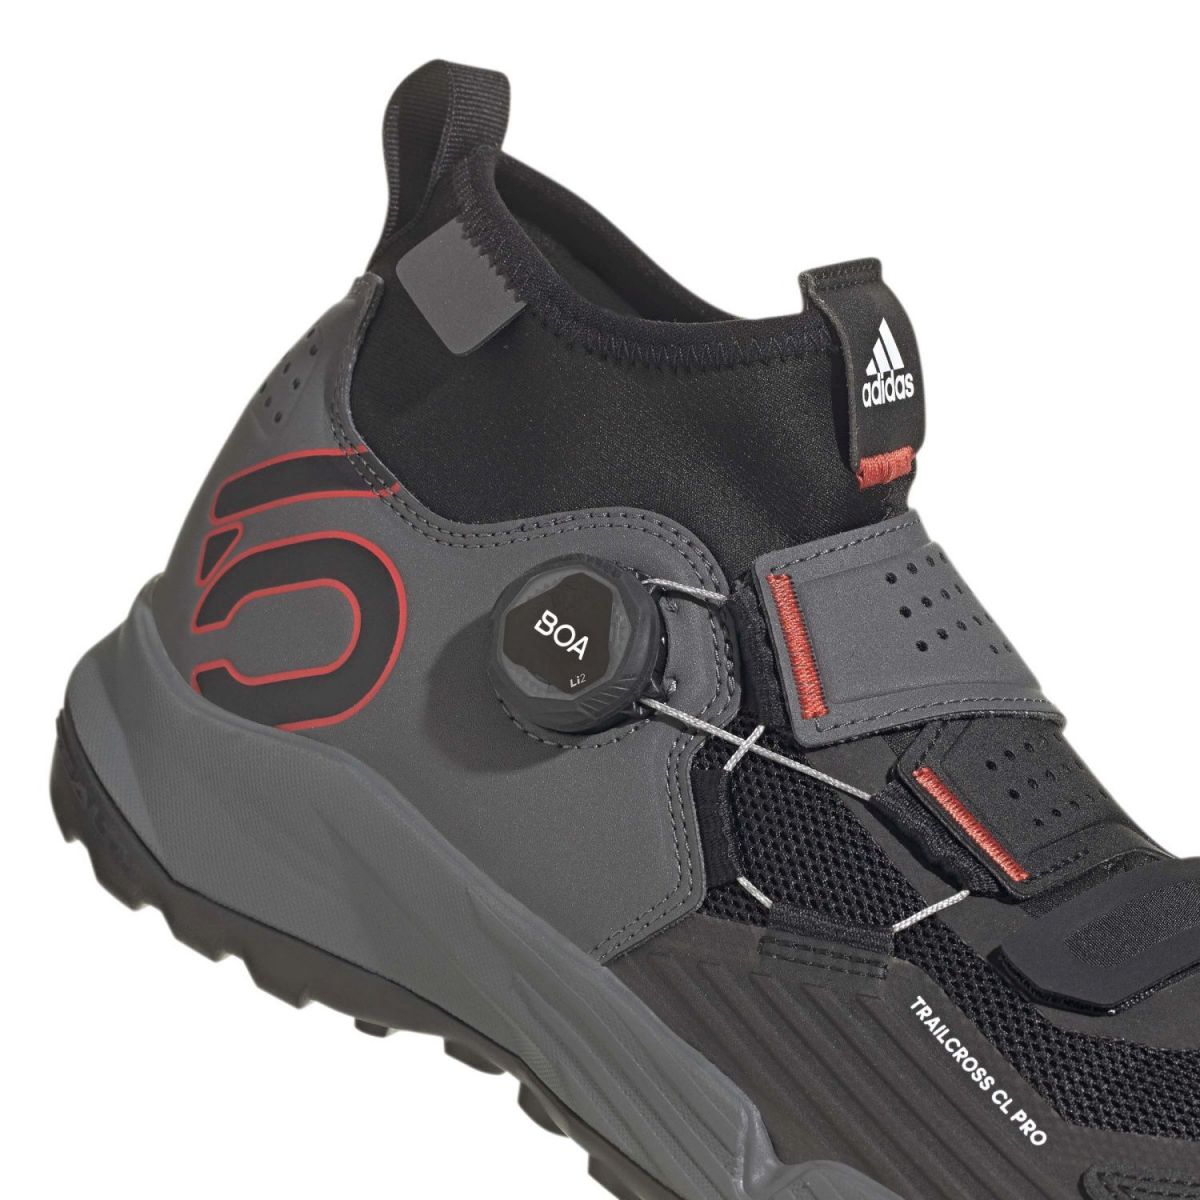 sistema de ajuste boa de las Zapatillas Five Ten Trailcross Pro Clip-in para pedal automático | GY9117 | color negro